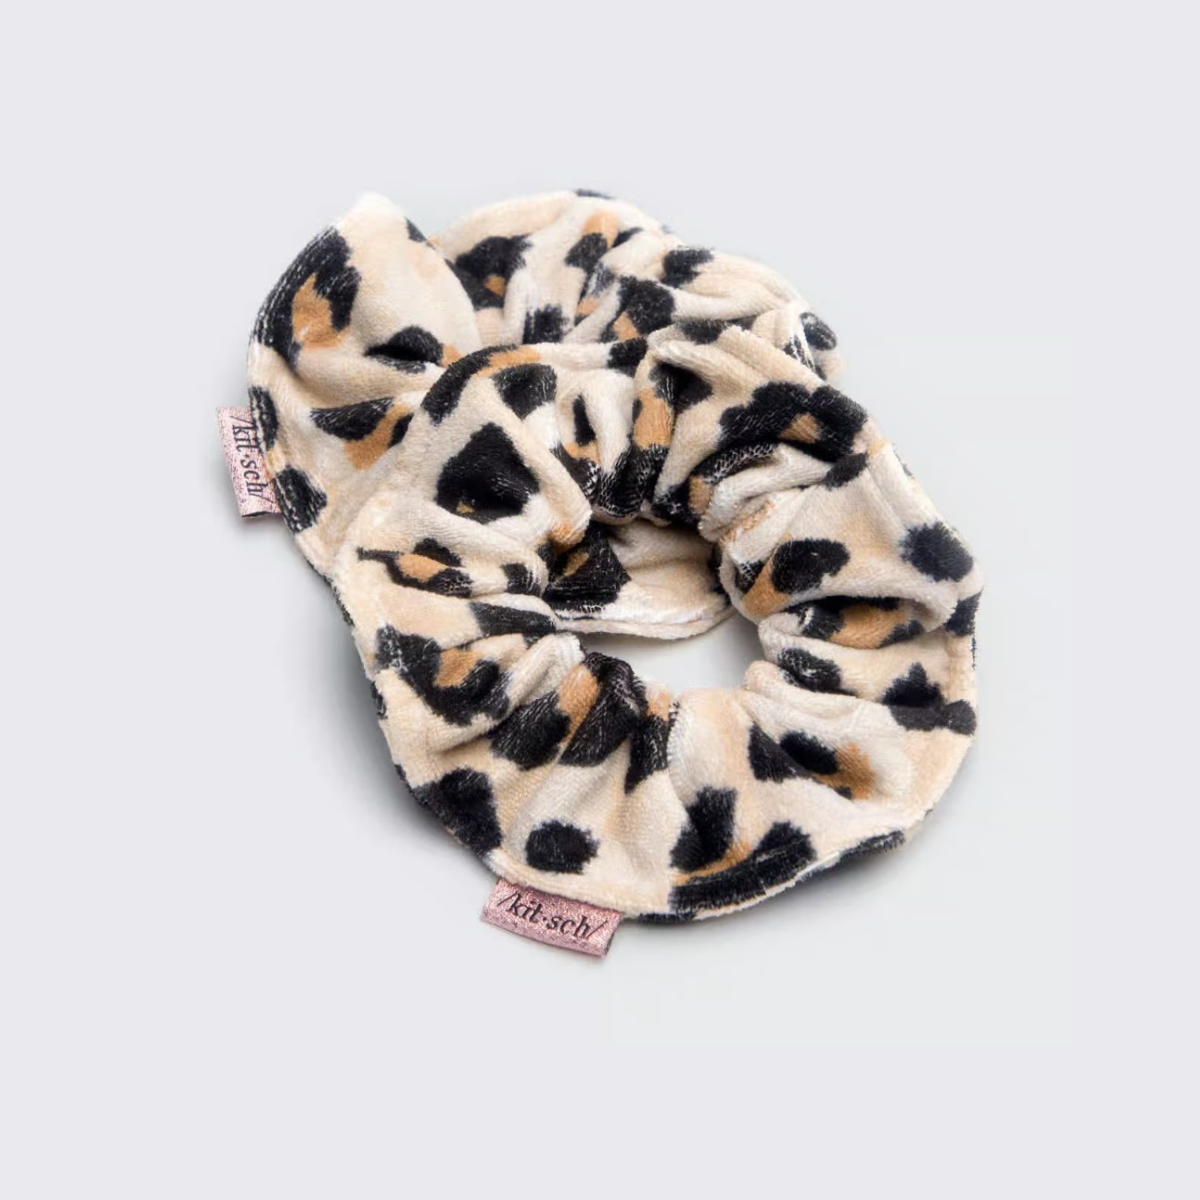 Kitsch Towel Scrunchies 2pk in Leopard